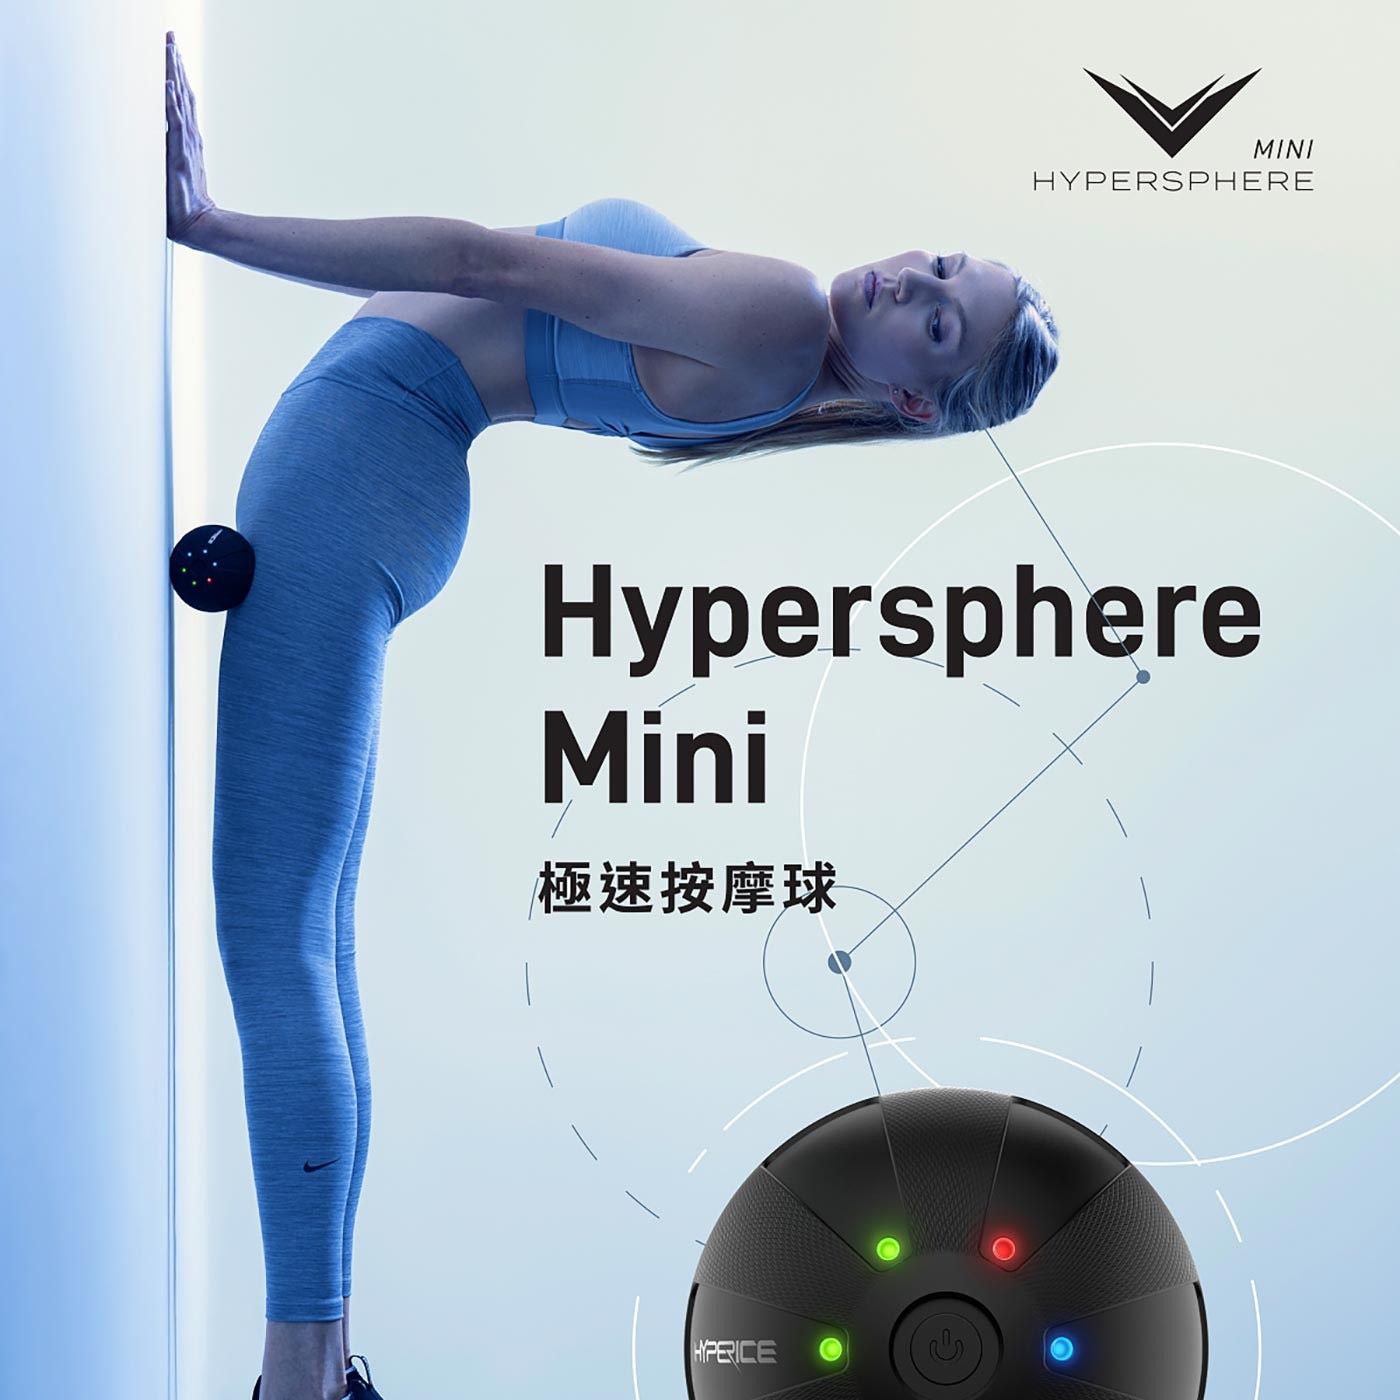 Hypersphere Mini 極速按摩球職業運動員、奧林匹克選手使用款，精準深層按摩，充分舒緩放鬆，提供三段速電子控制，小巧便利、攜帶方便、適合外出和旅遊攜帶。